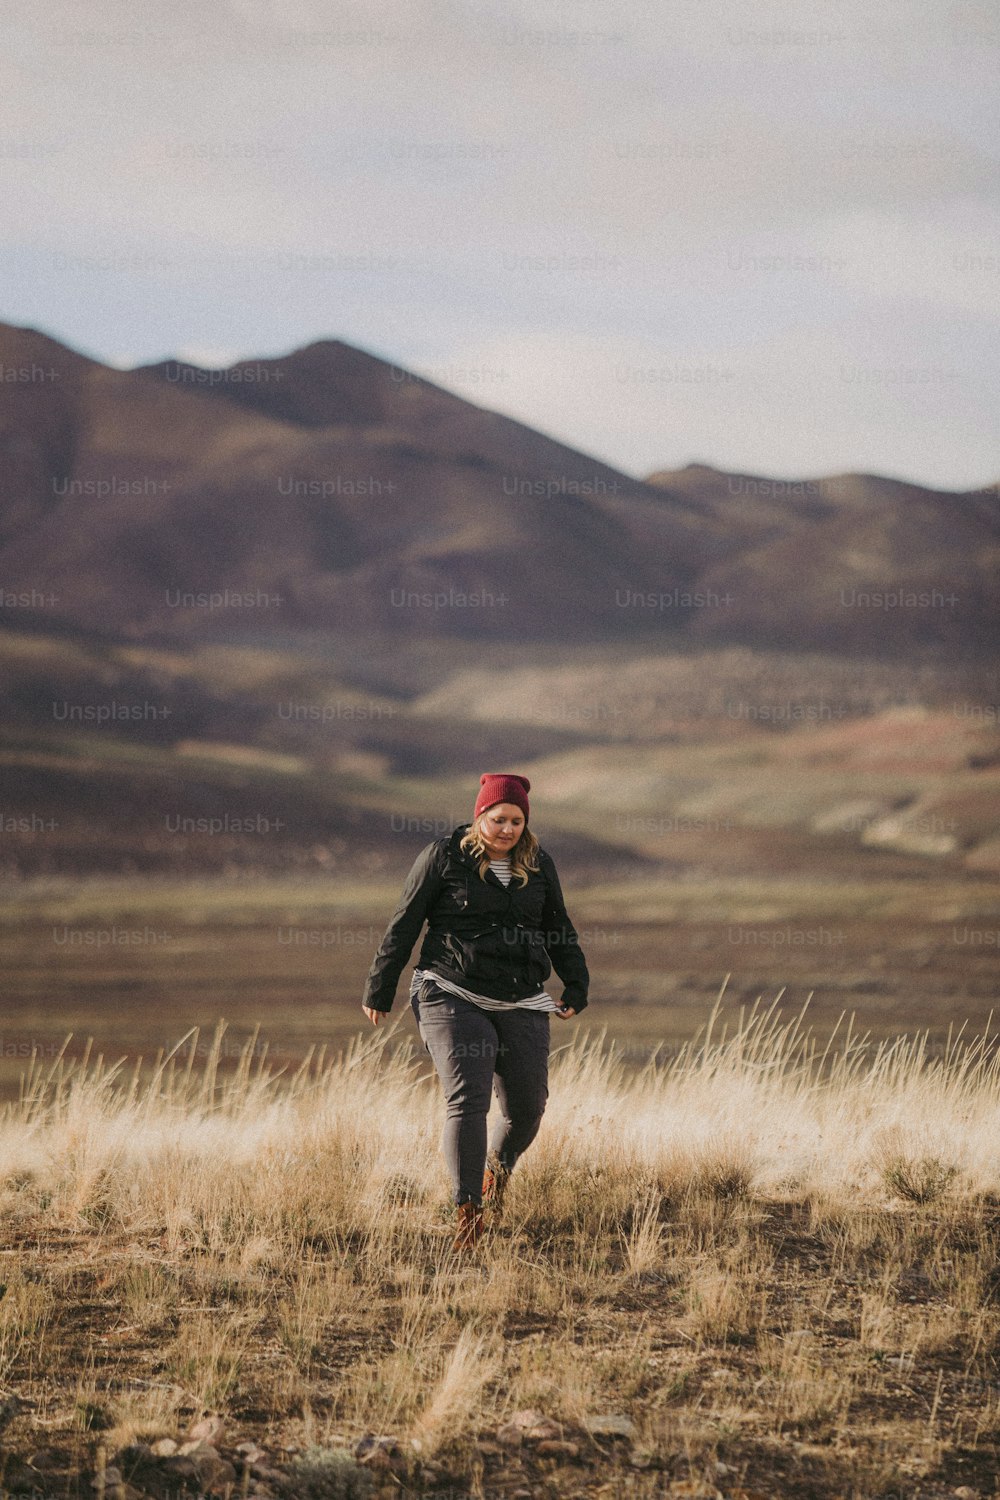 Eine Frau, die über ein trockenes, grasbedecktes Feld geht